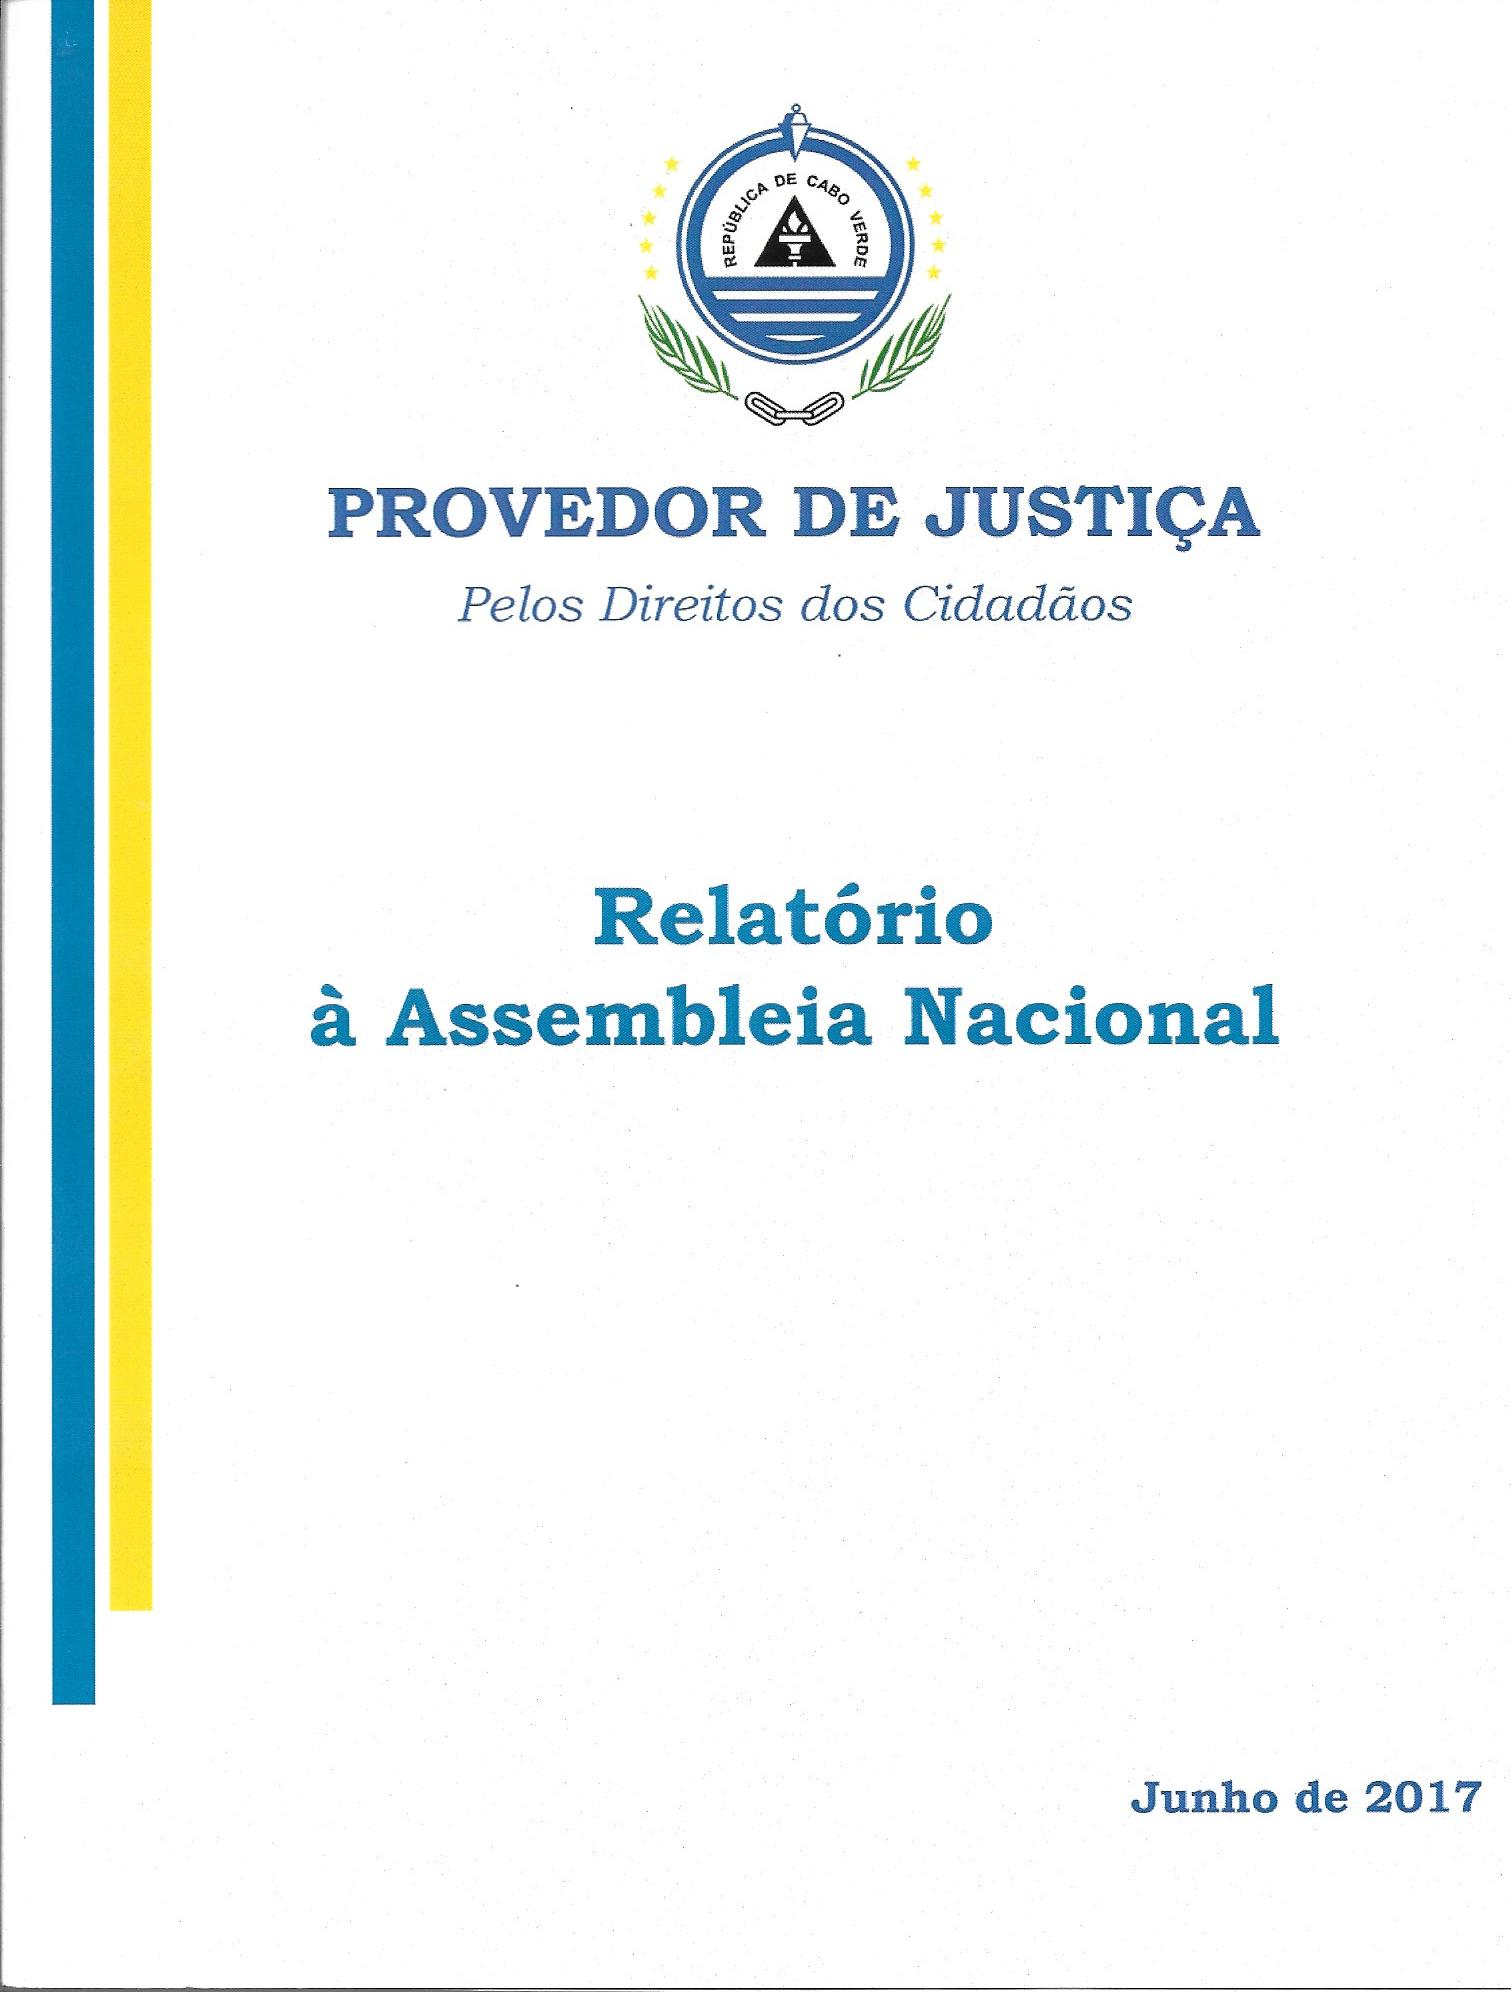 Provedor de Justiça - Pelos Direitos dos Cidadãos